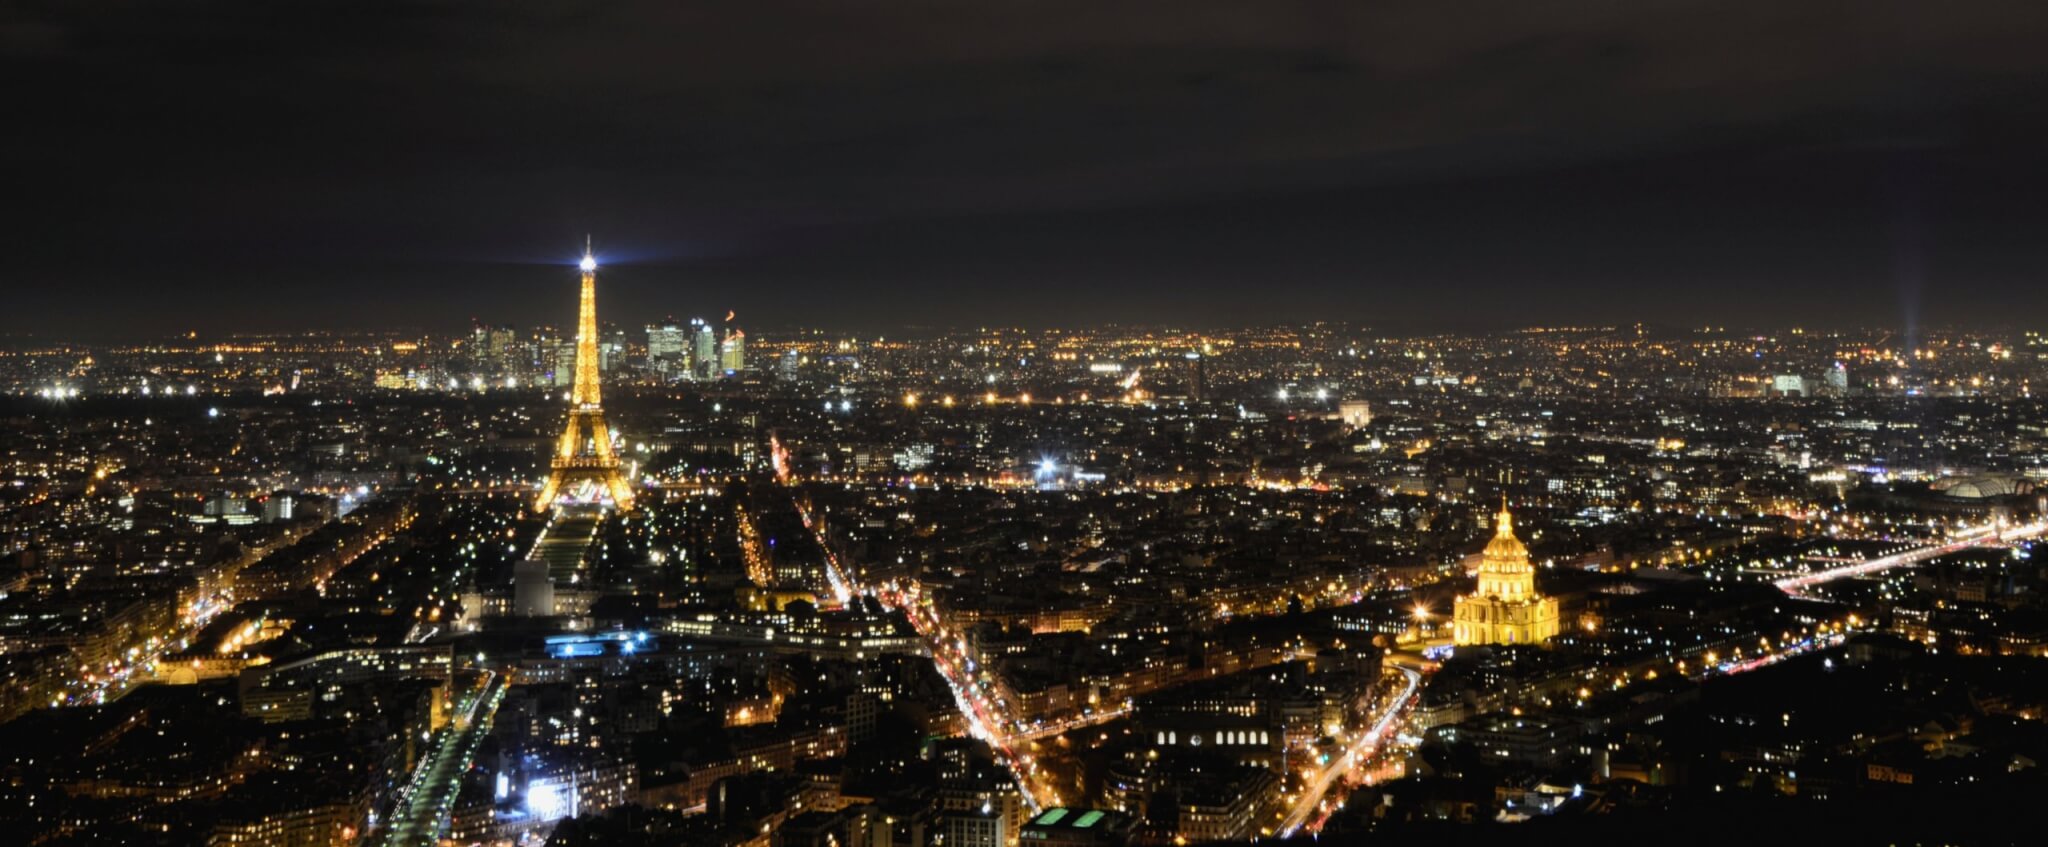 Un bug lié à l’année bissextile a fait flancher l’éclairage public à Paris